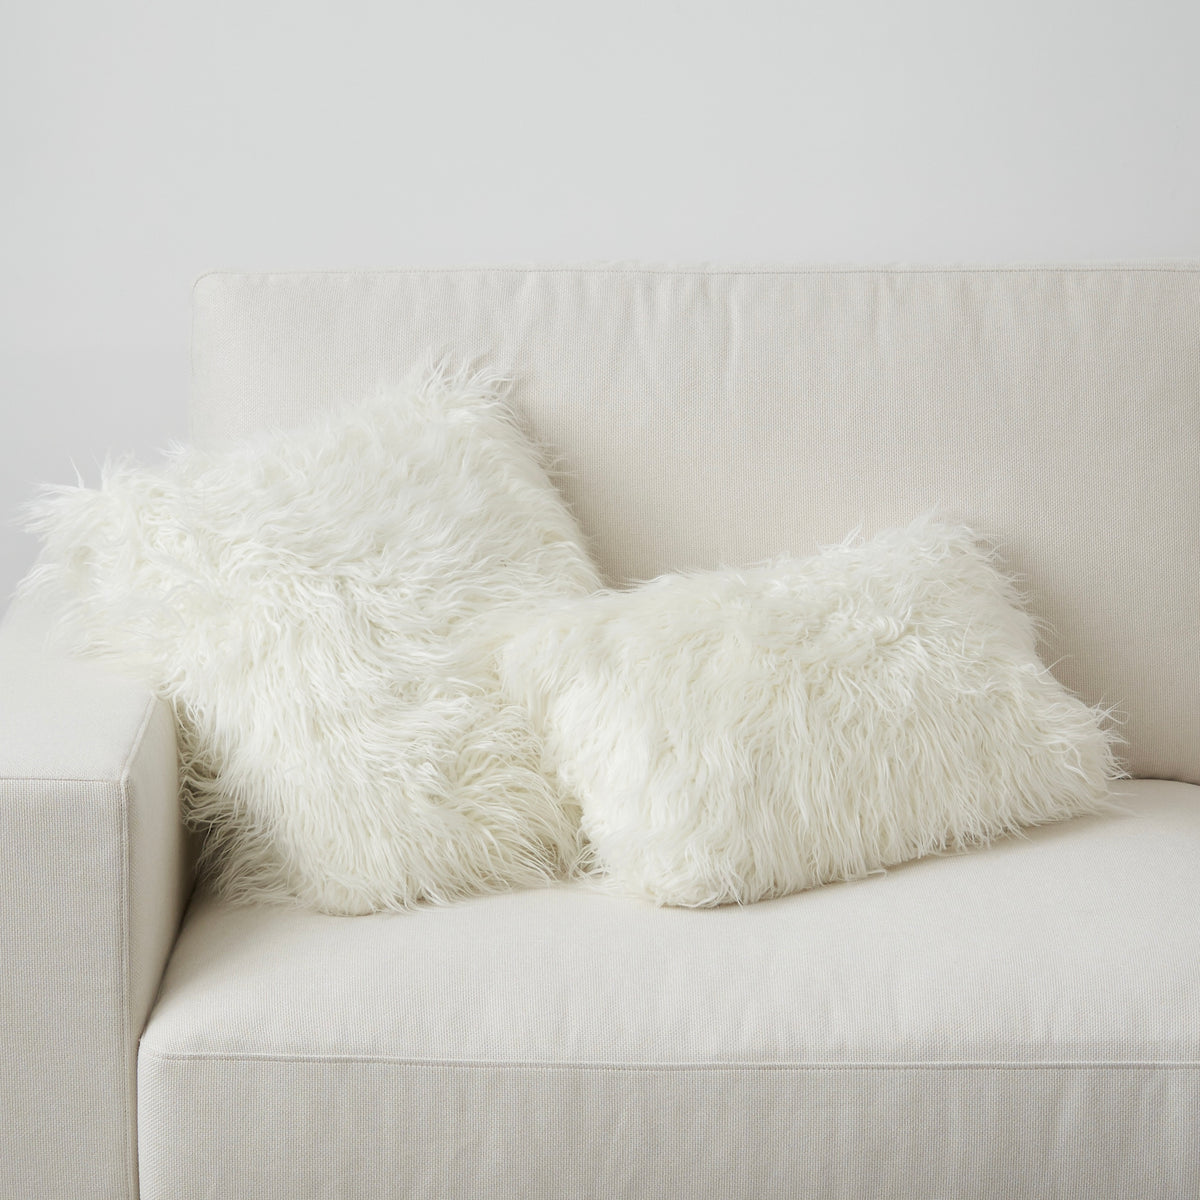 The Fluffier Cushion - Toss Pillow